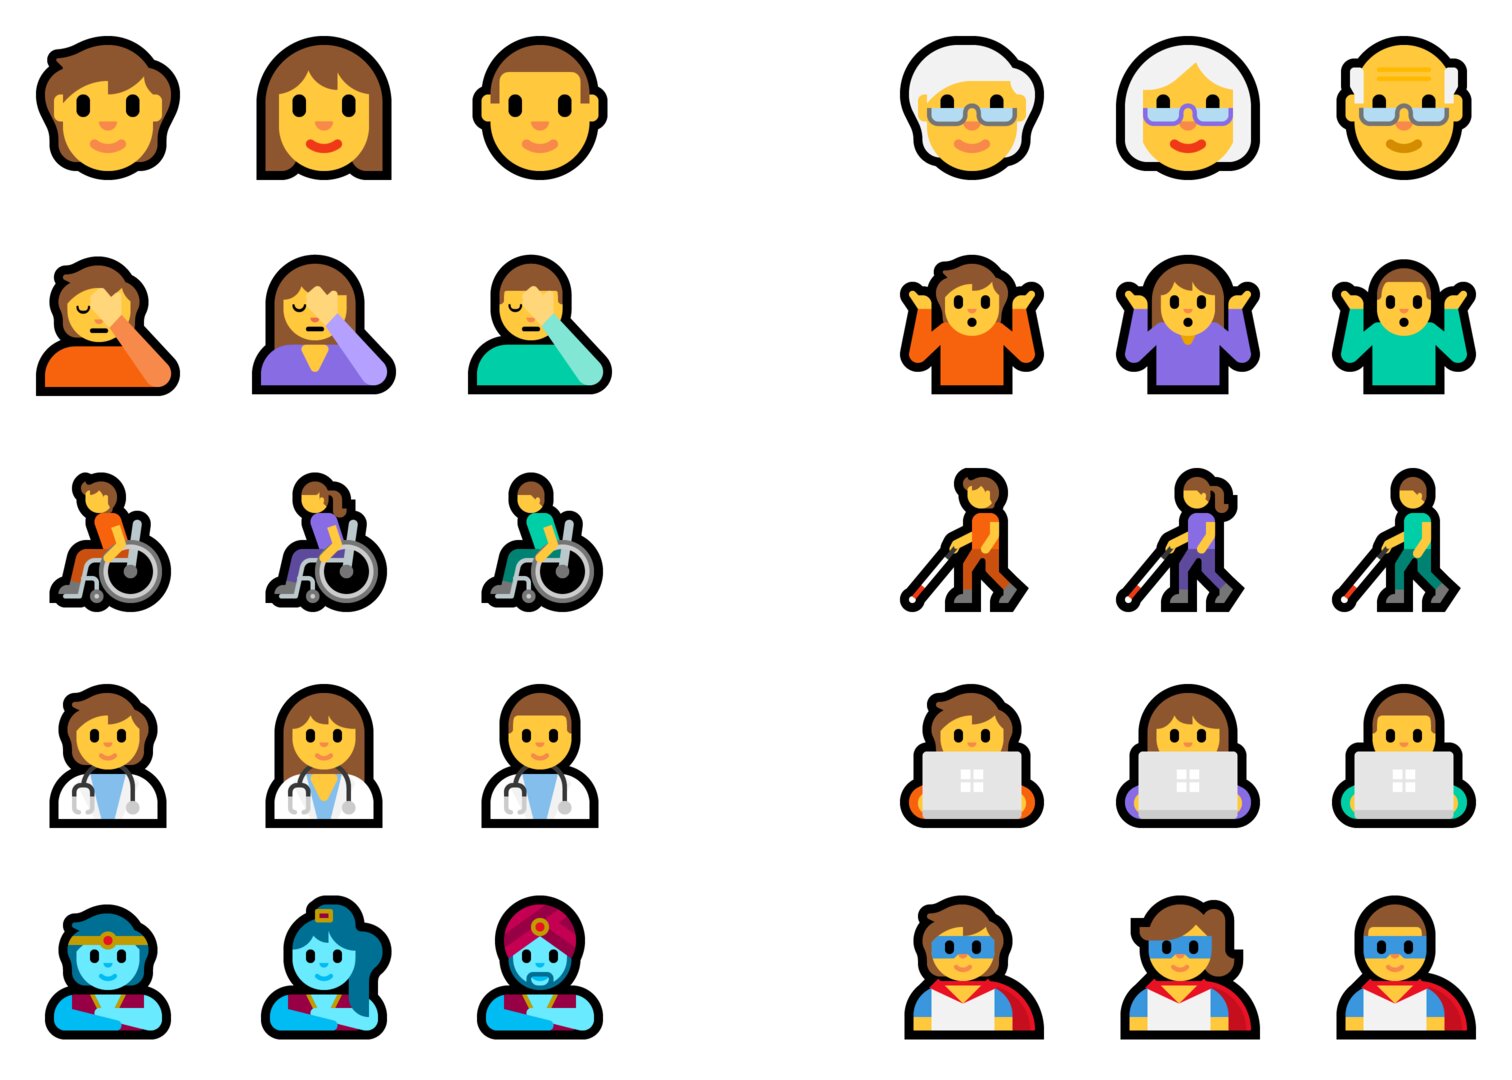 Geschlechtsneutrales Emoji (jeweils links)